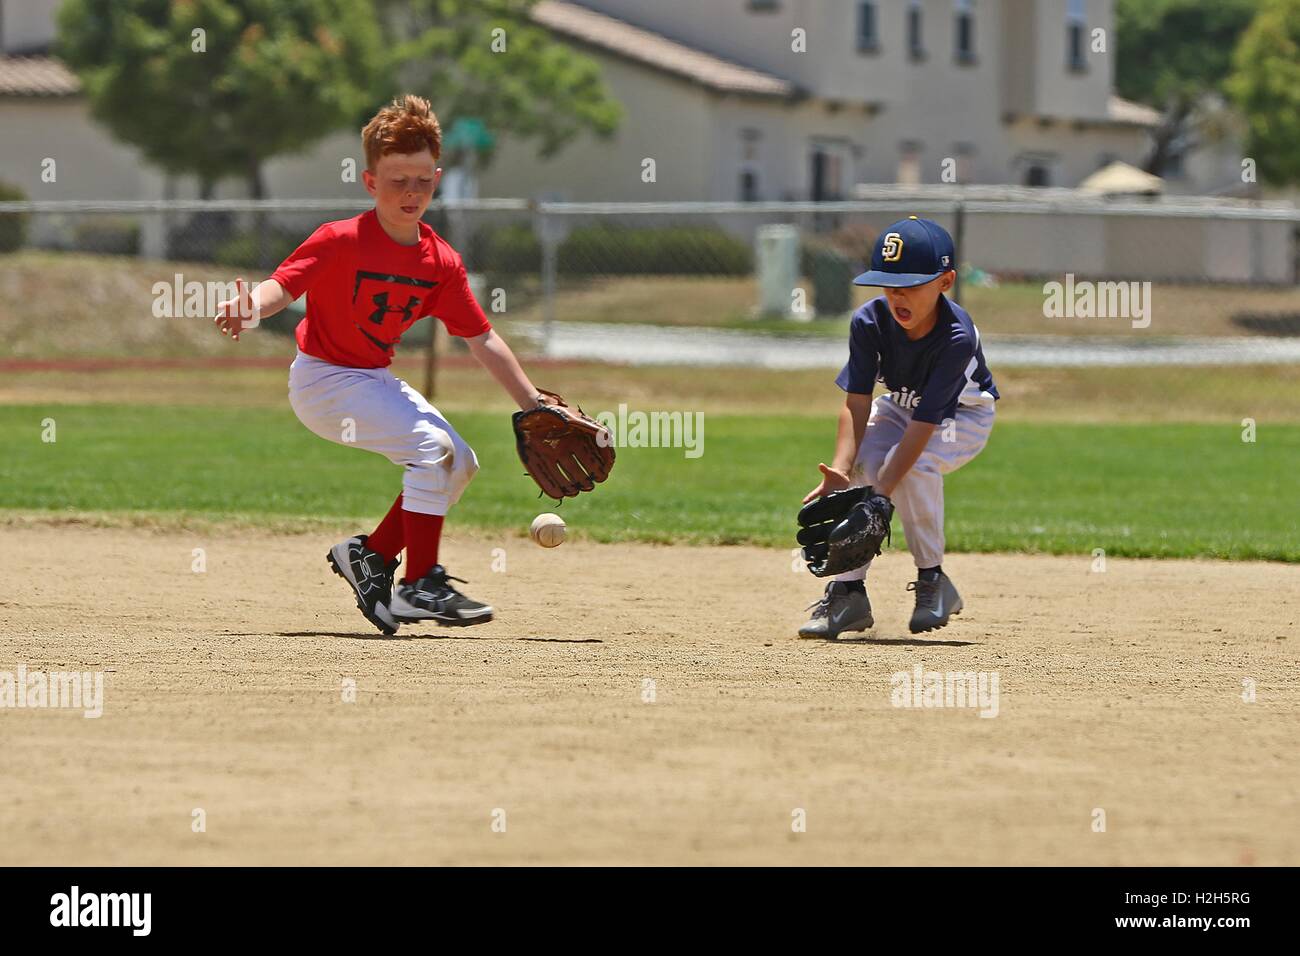 Los muchachos de carrera con sus manoplas para atrapar una bola en el infield durante un verano Campamento de béisbol con el ex jugador profesional de béisbol Adrian Burnside en el cable de montaña campo de béisbol el 12 de julio de 2016 en Camp Pendleton, California. Foto de stock